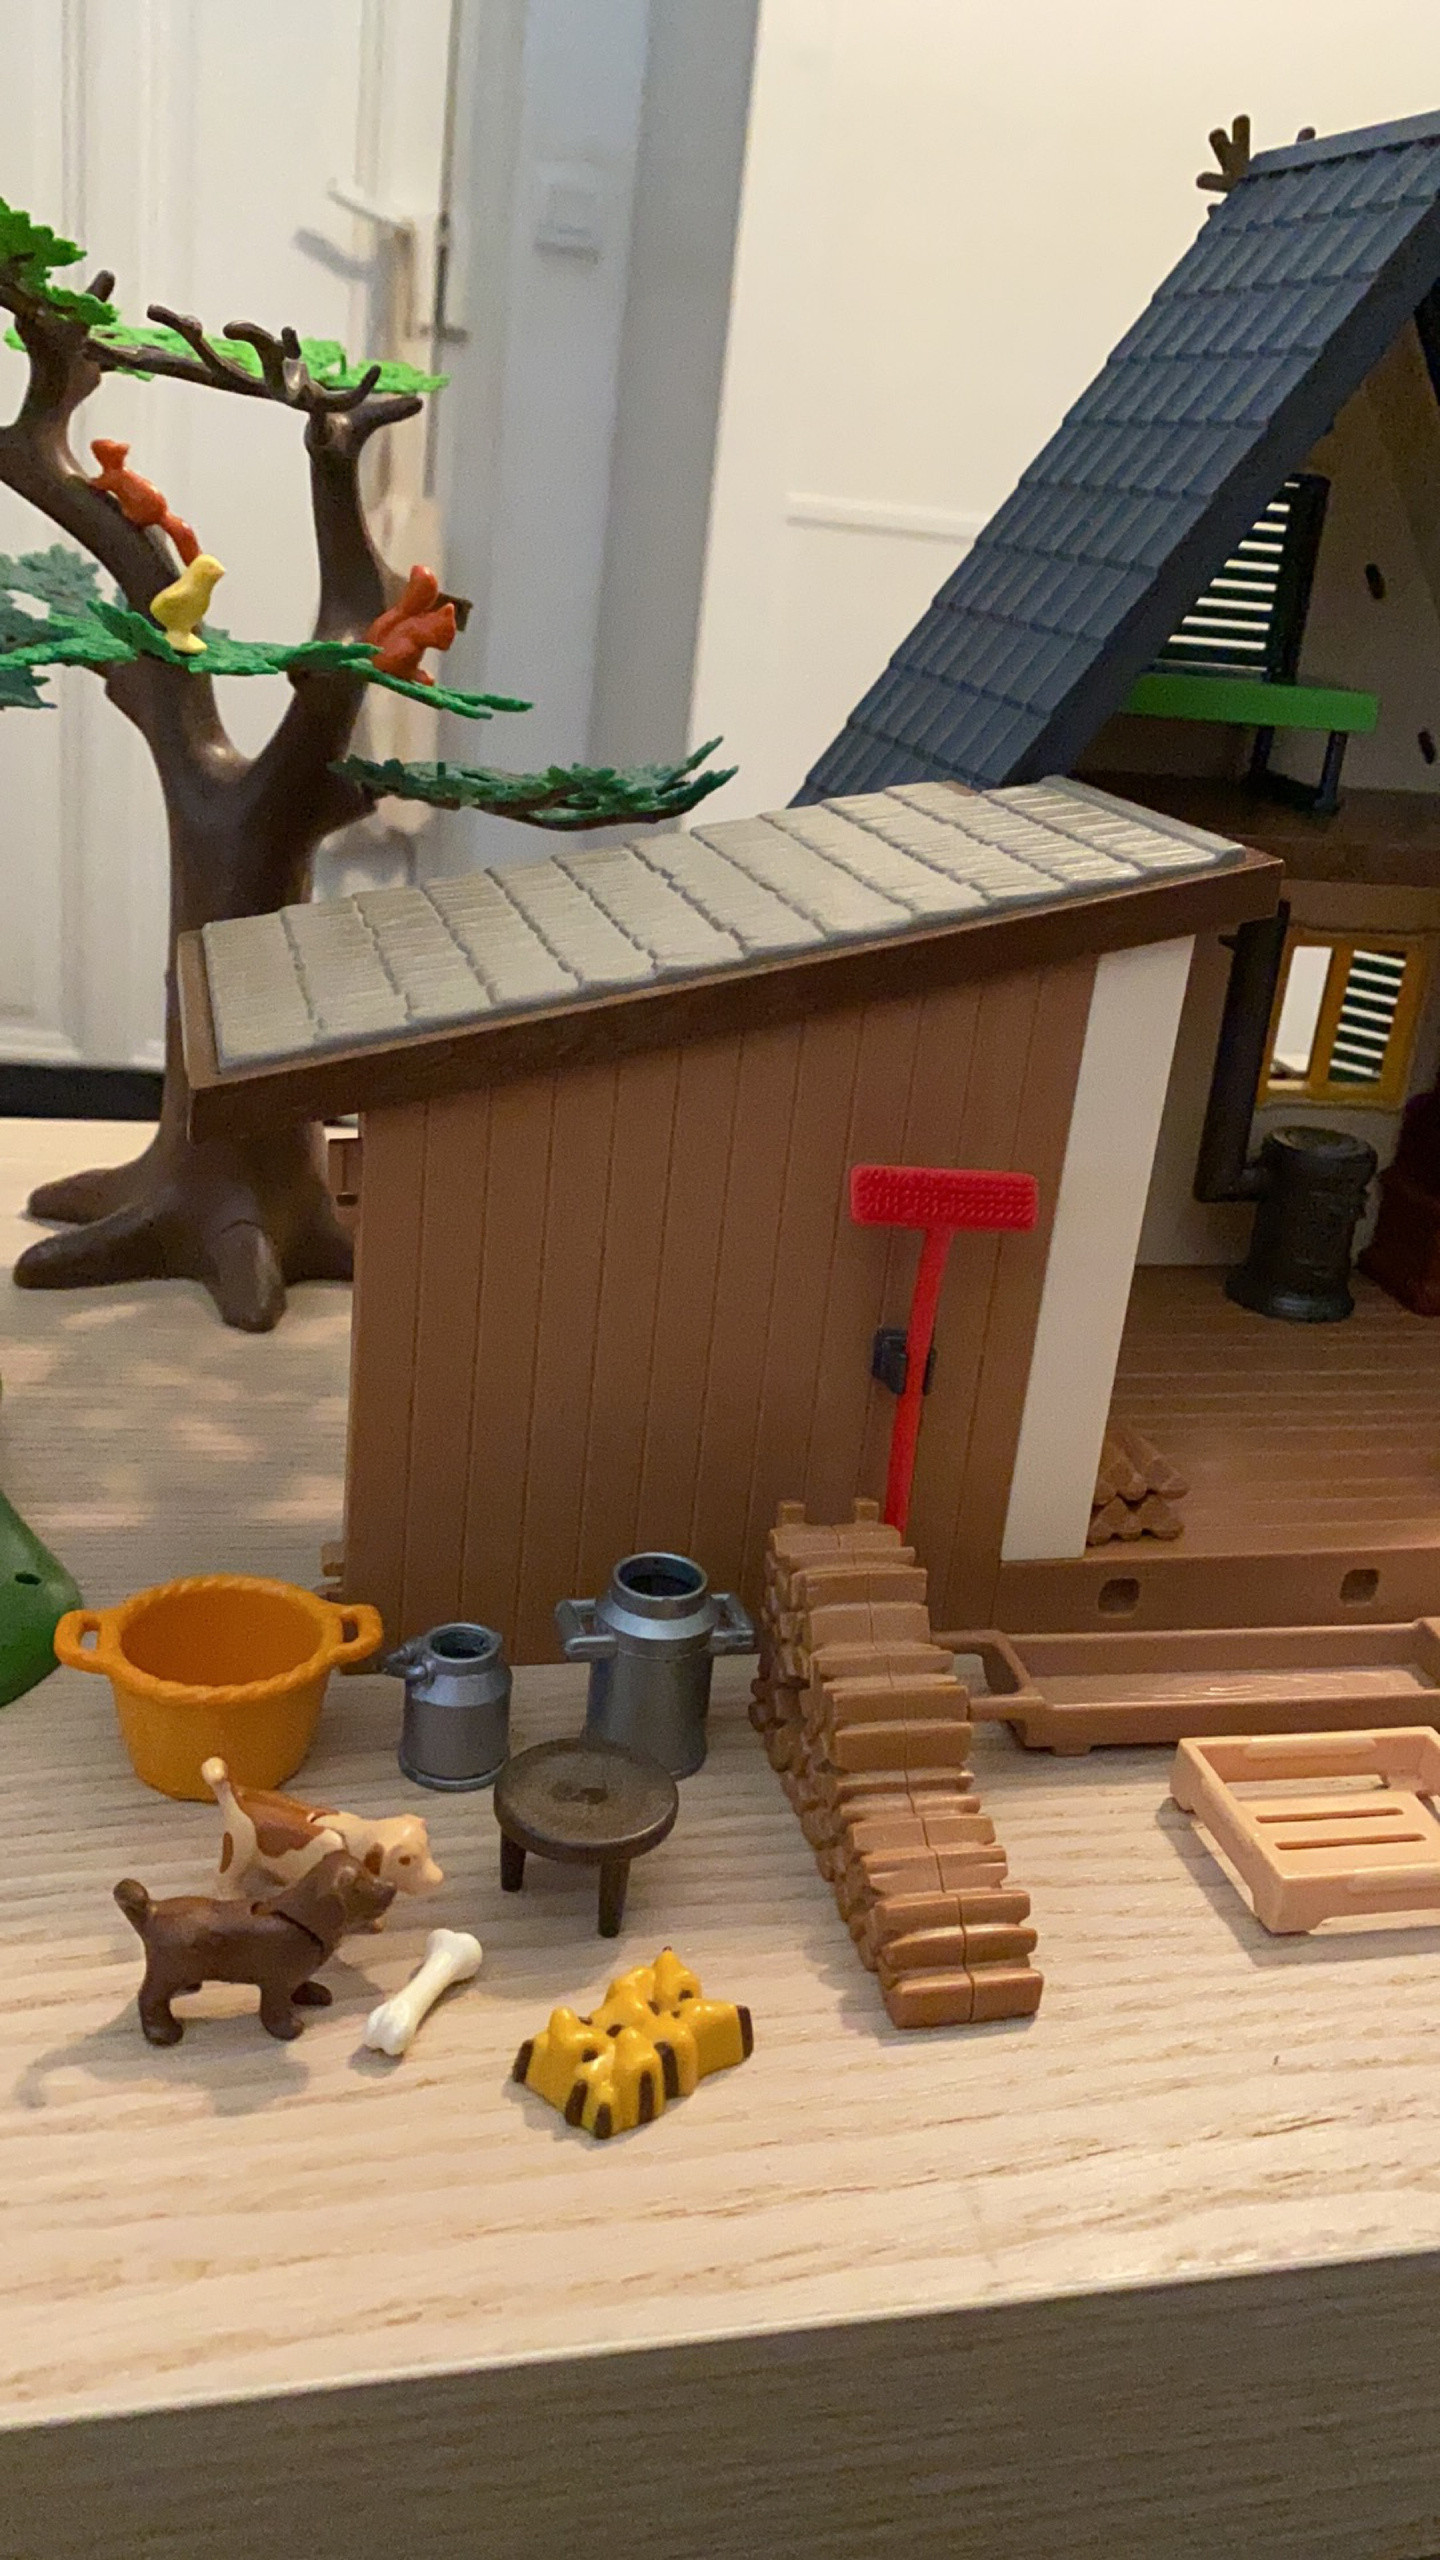 Playmobil 4207 - Maison forestière avec famille et animaux